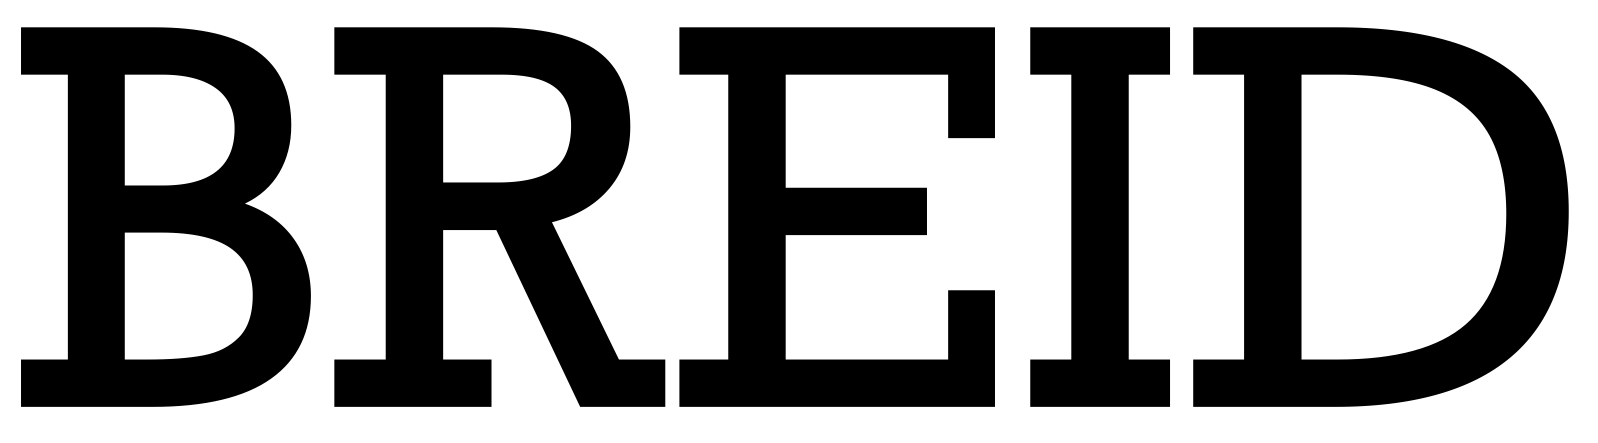 logo for Breid Bakers